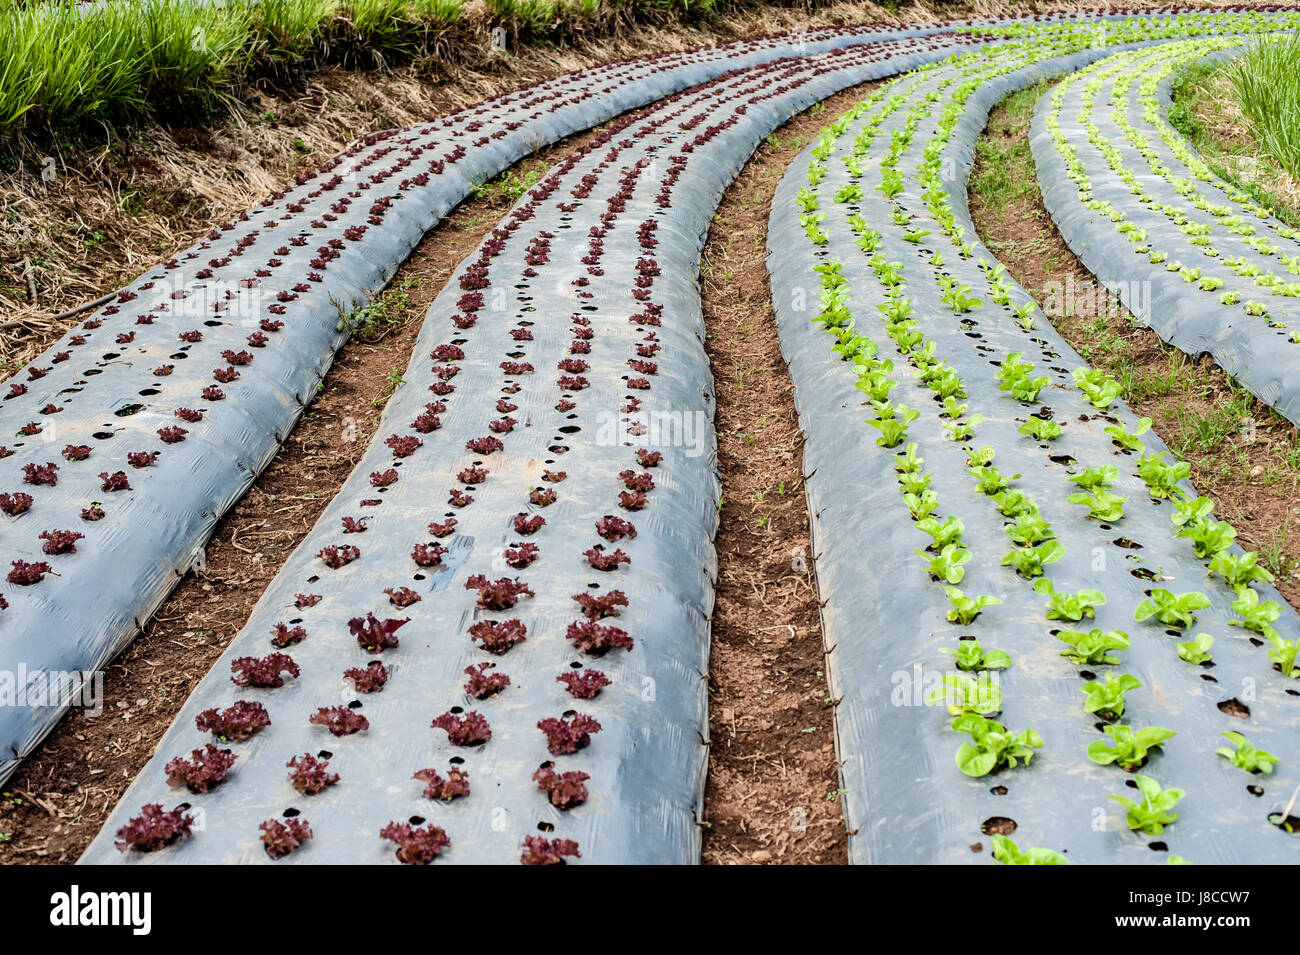 La culture des légumes bio hydroponique farm Banque D'Images